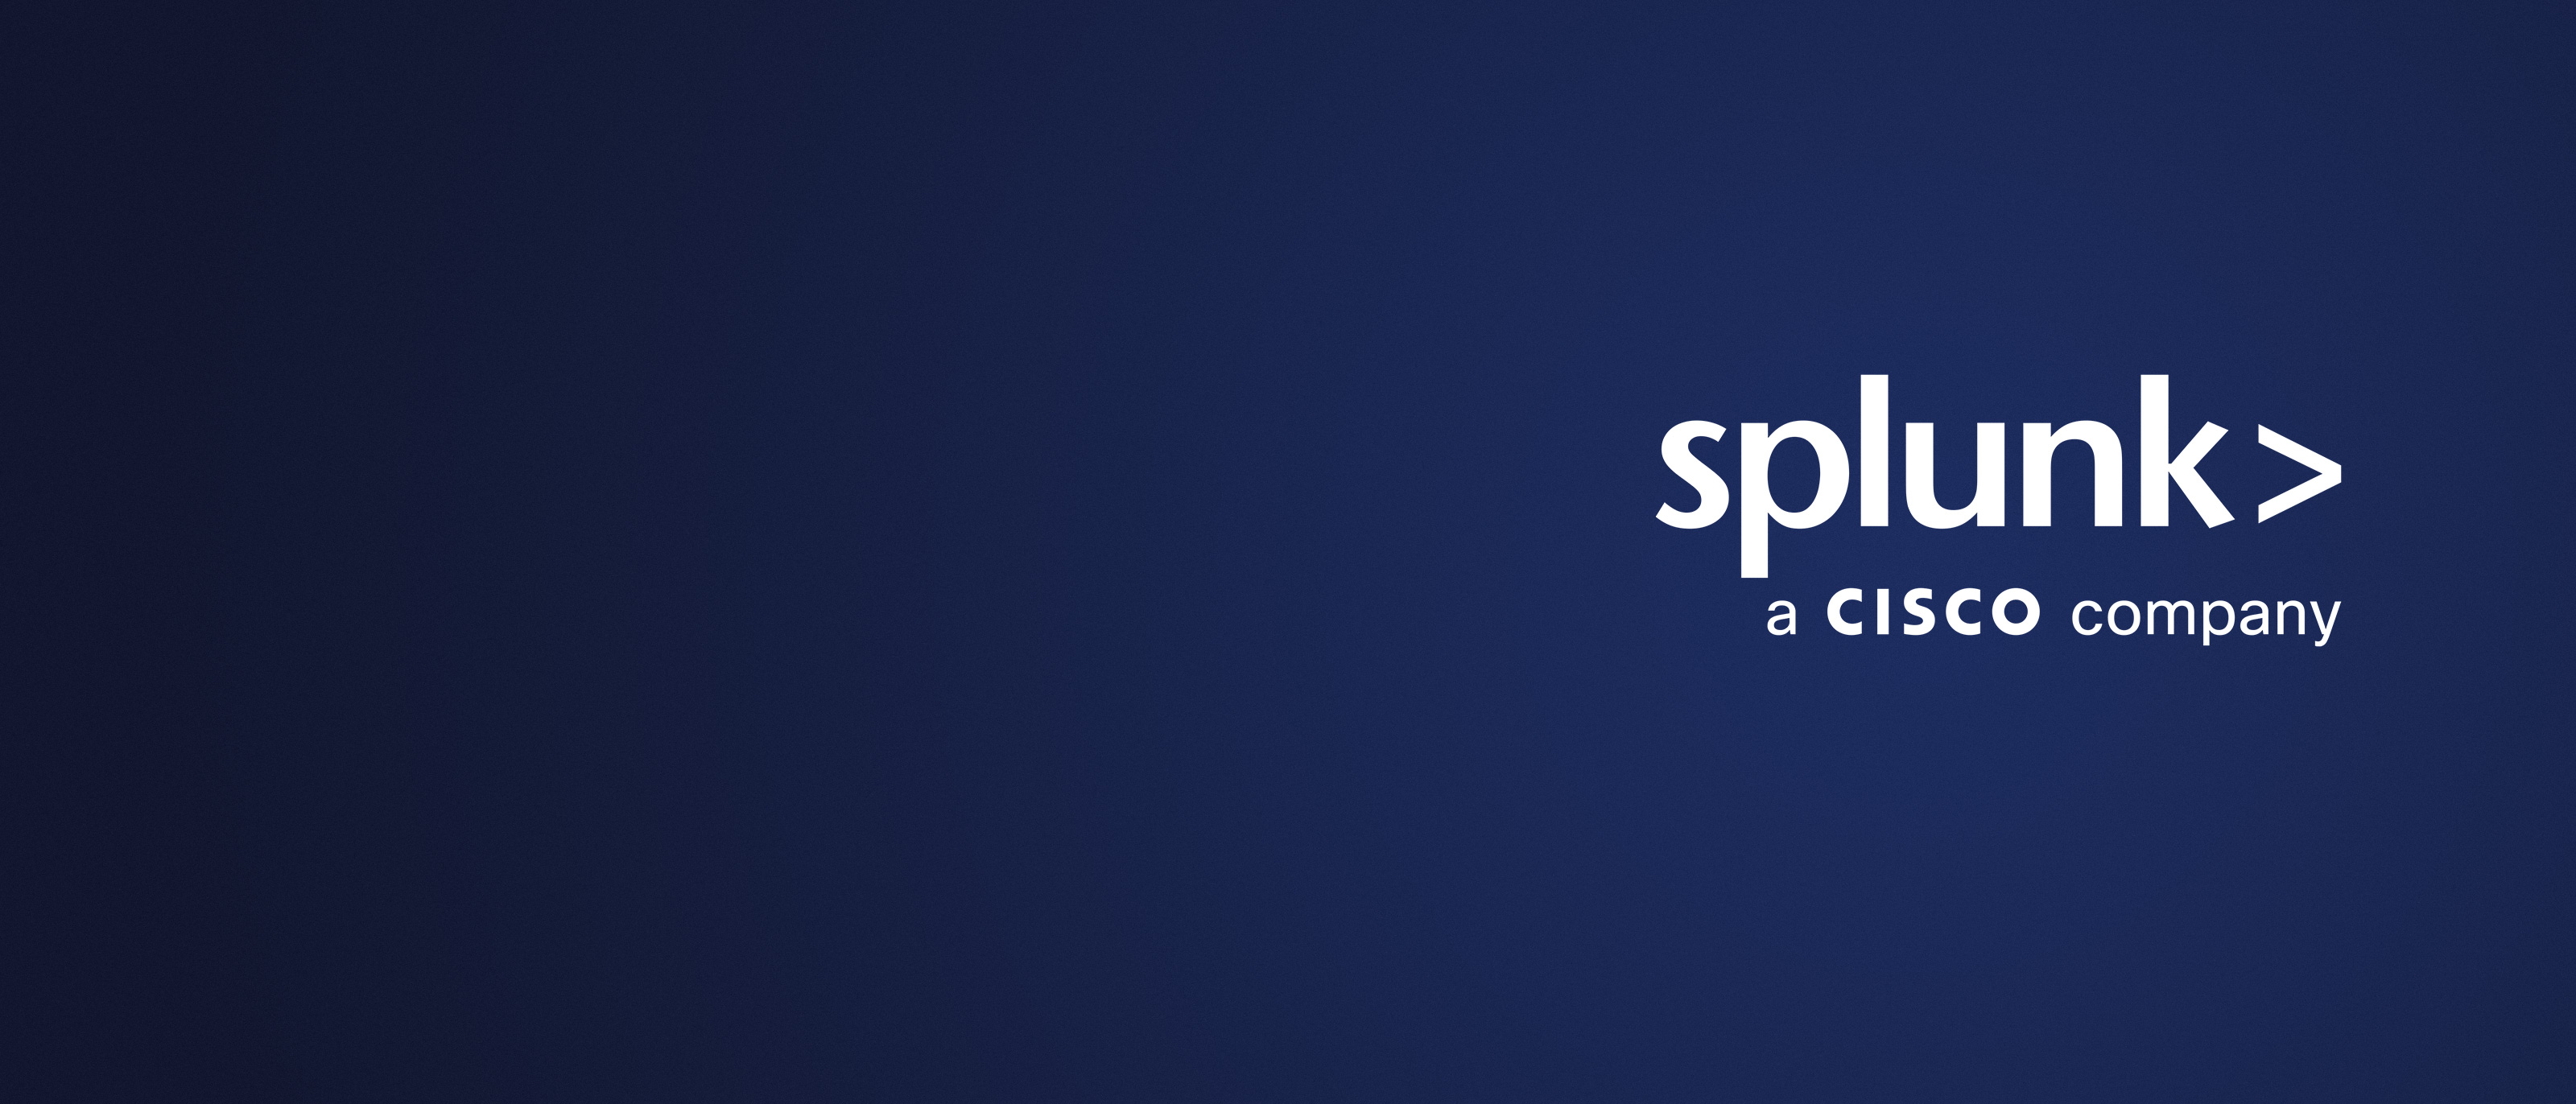 Splunk는 이제 시스코 회사입니다. 이점을 누릴 준비를 하세요.